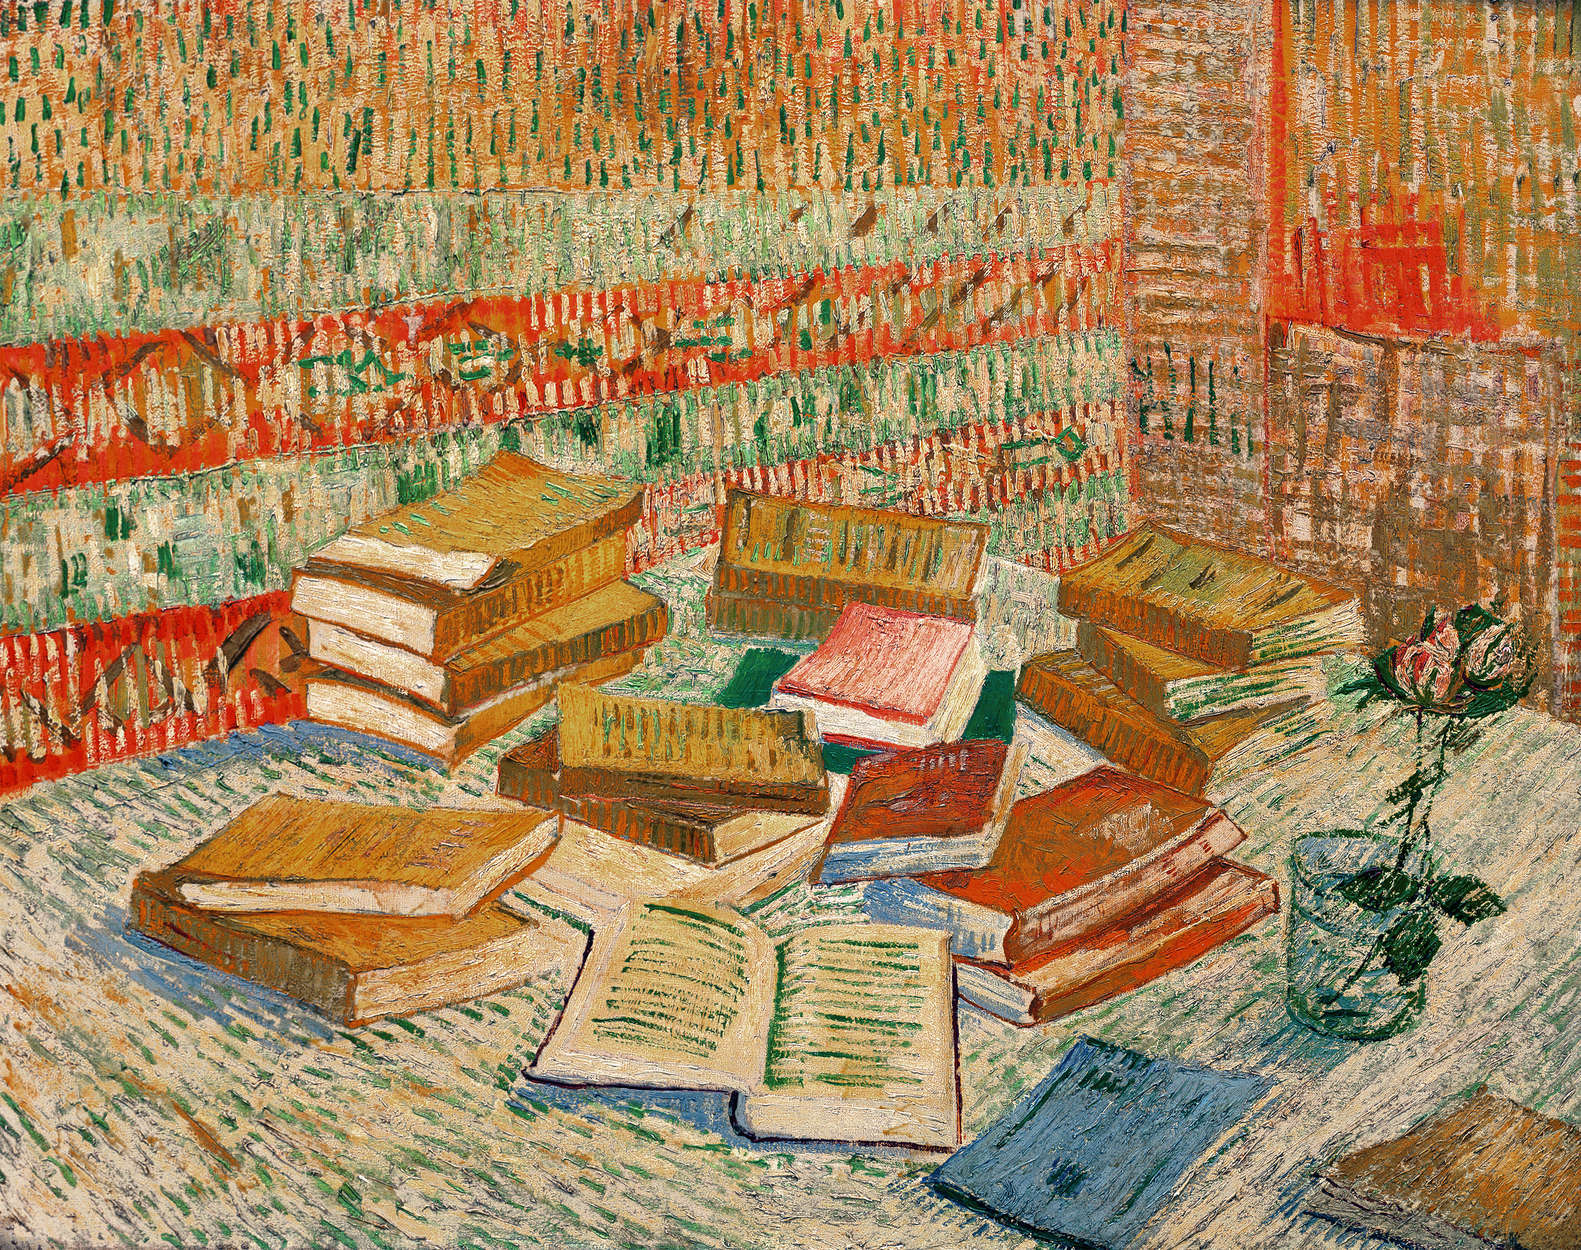             De gele boeken" muurschildering door Vincent van Gogh
        